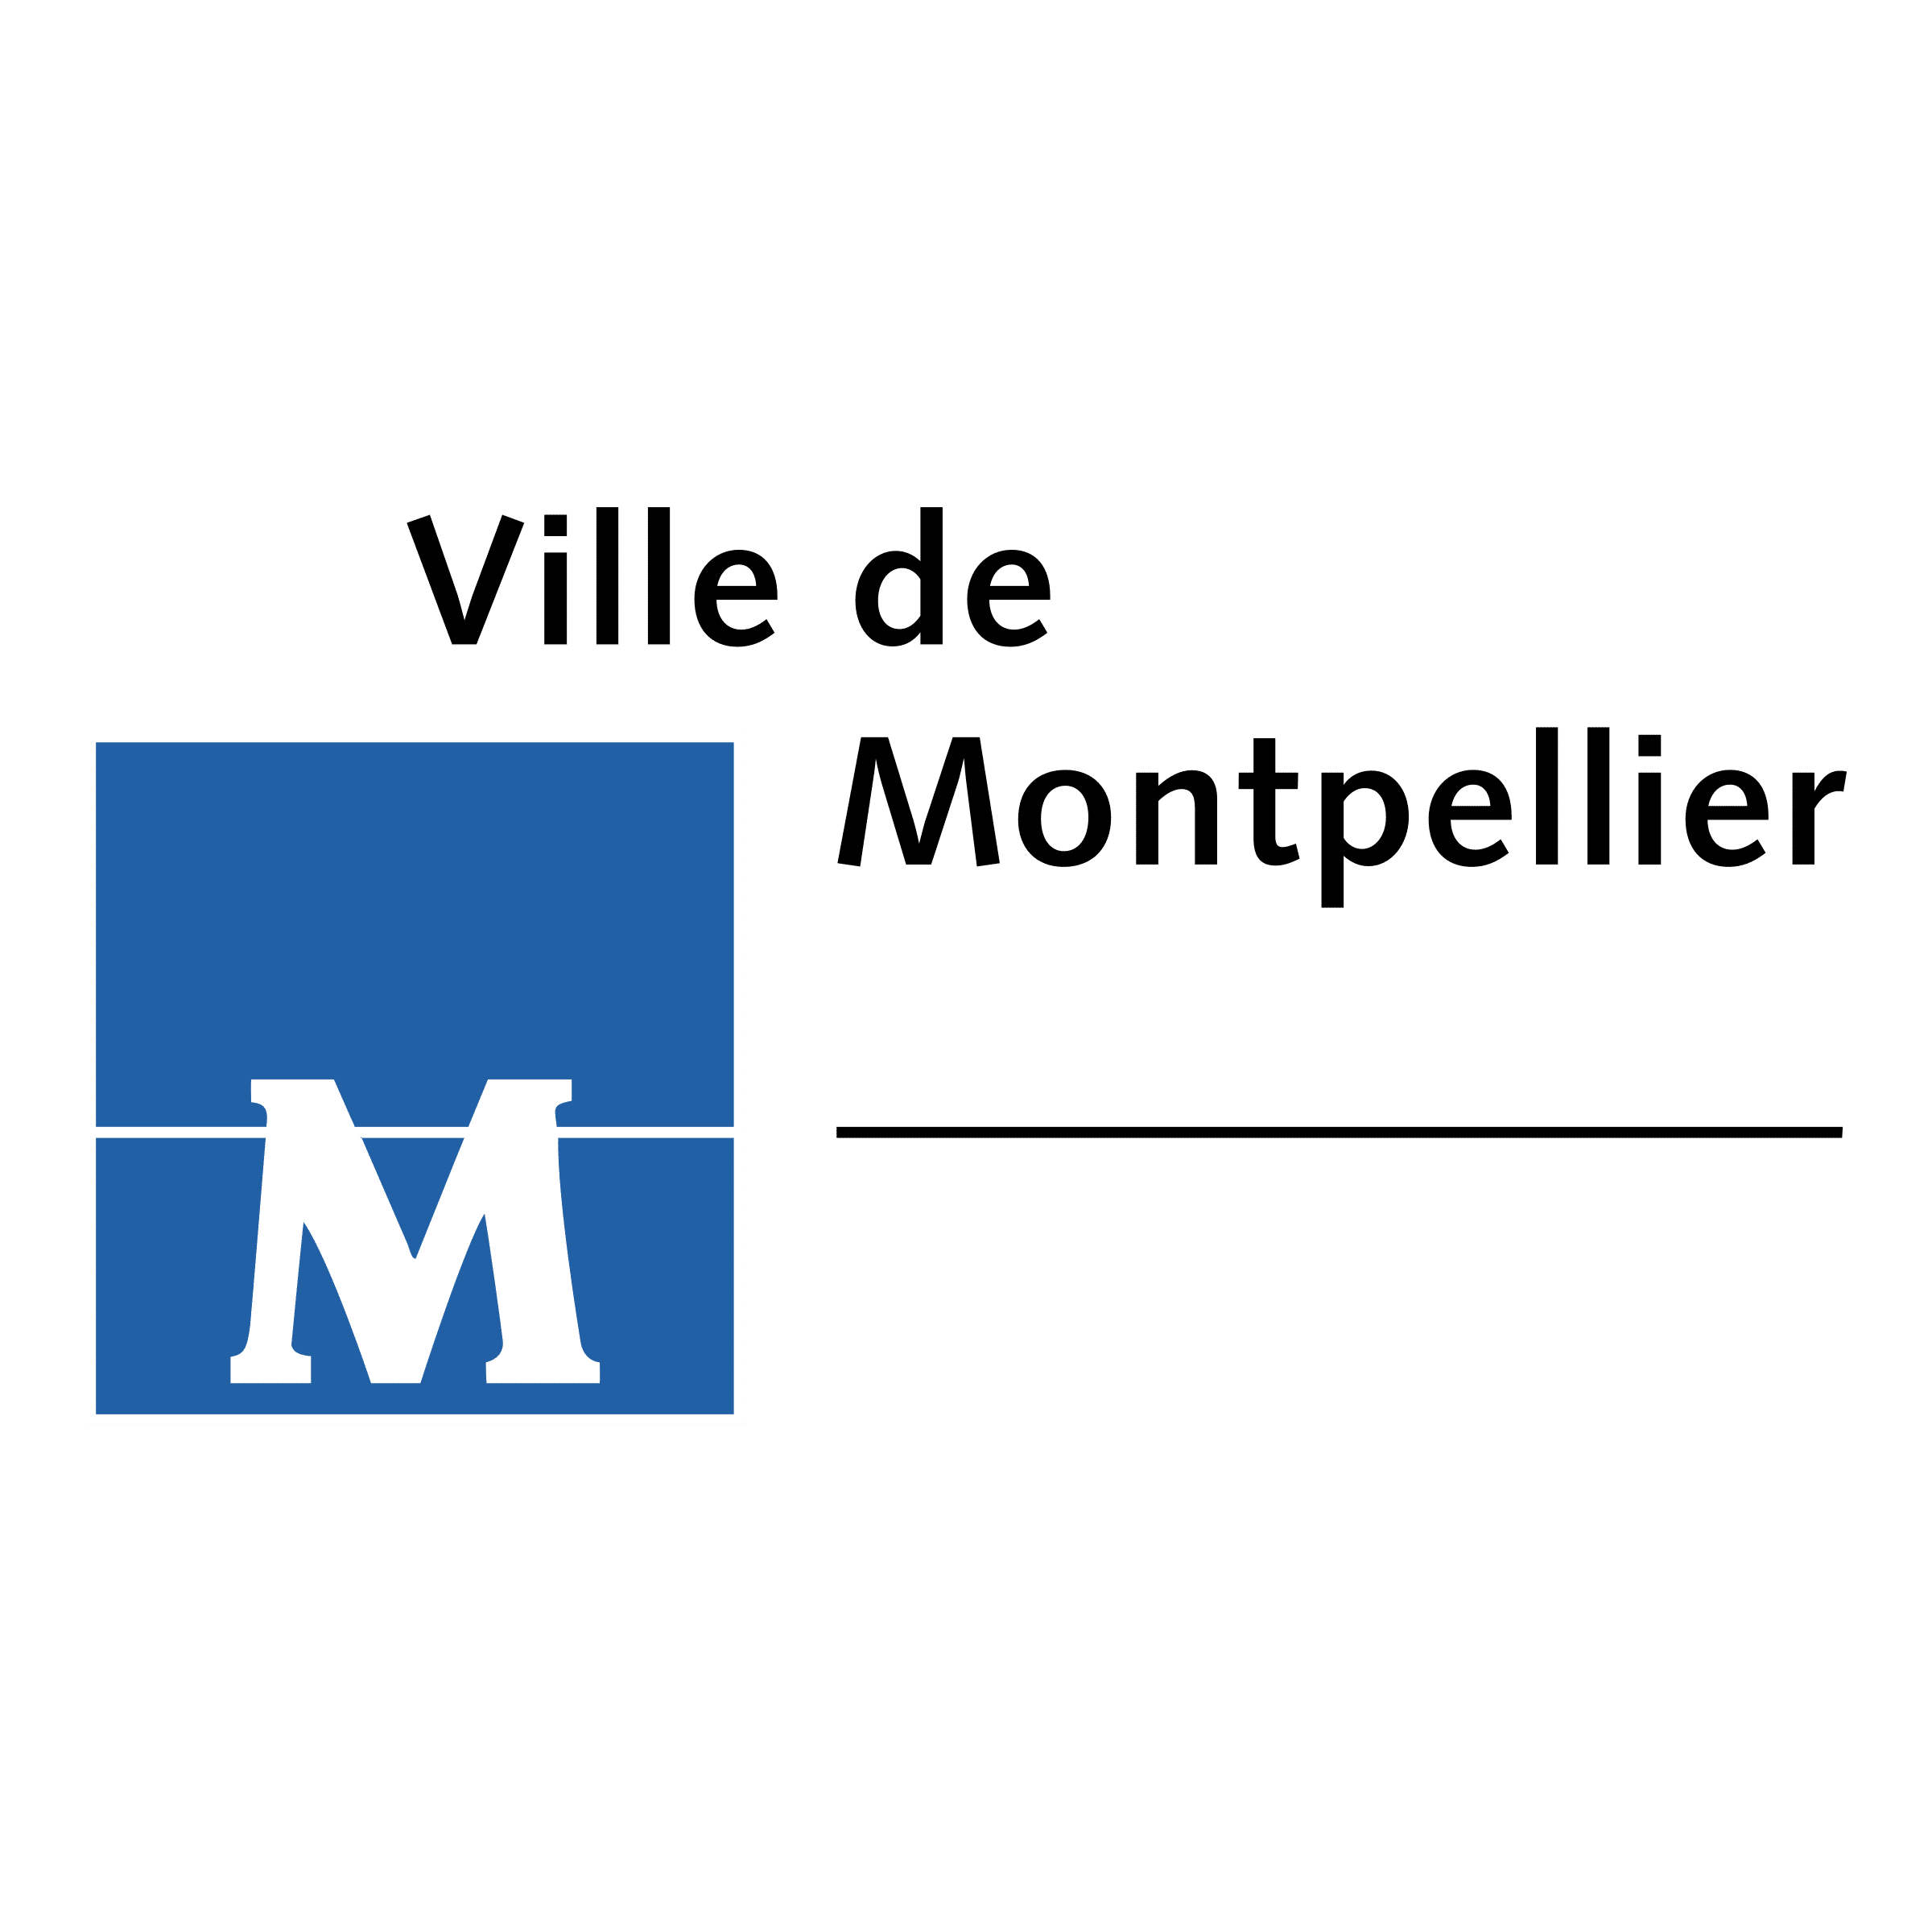 184-logo-ville-de-montpellier.png